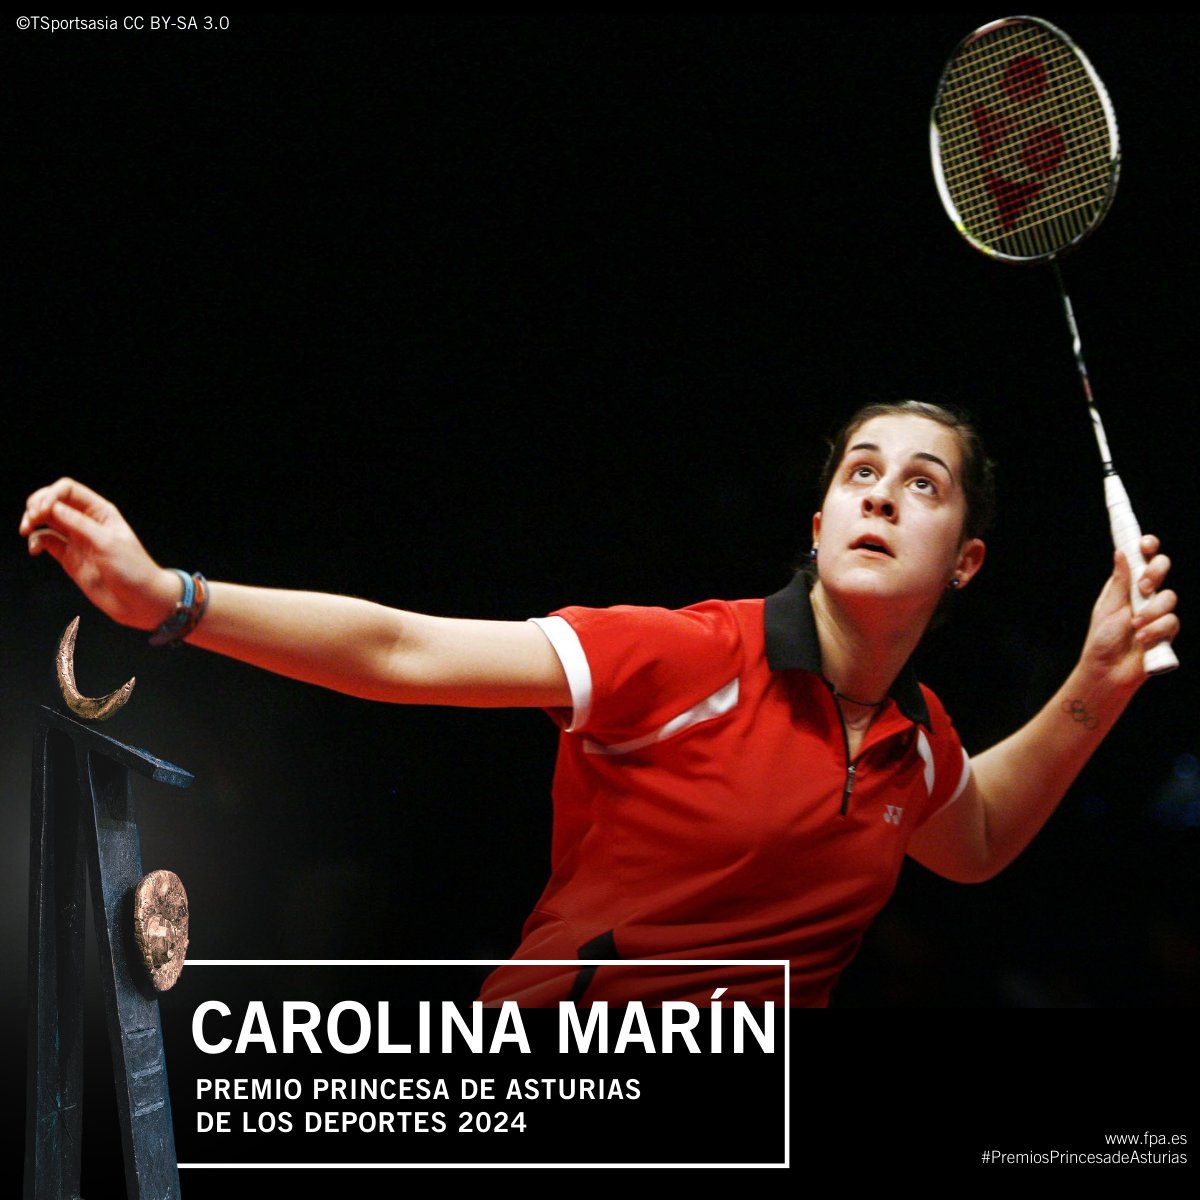 #ÚLTIMAHORA: @CarolinaMarin ha sido galardonada con el Premio Princesa de Asturias de los Deportes 2024.
#PremiosPrincesadeAsturias